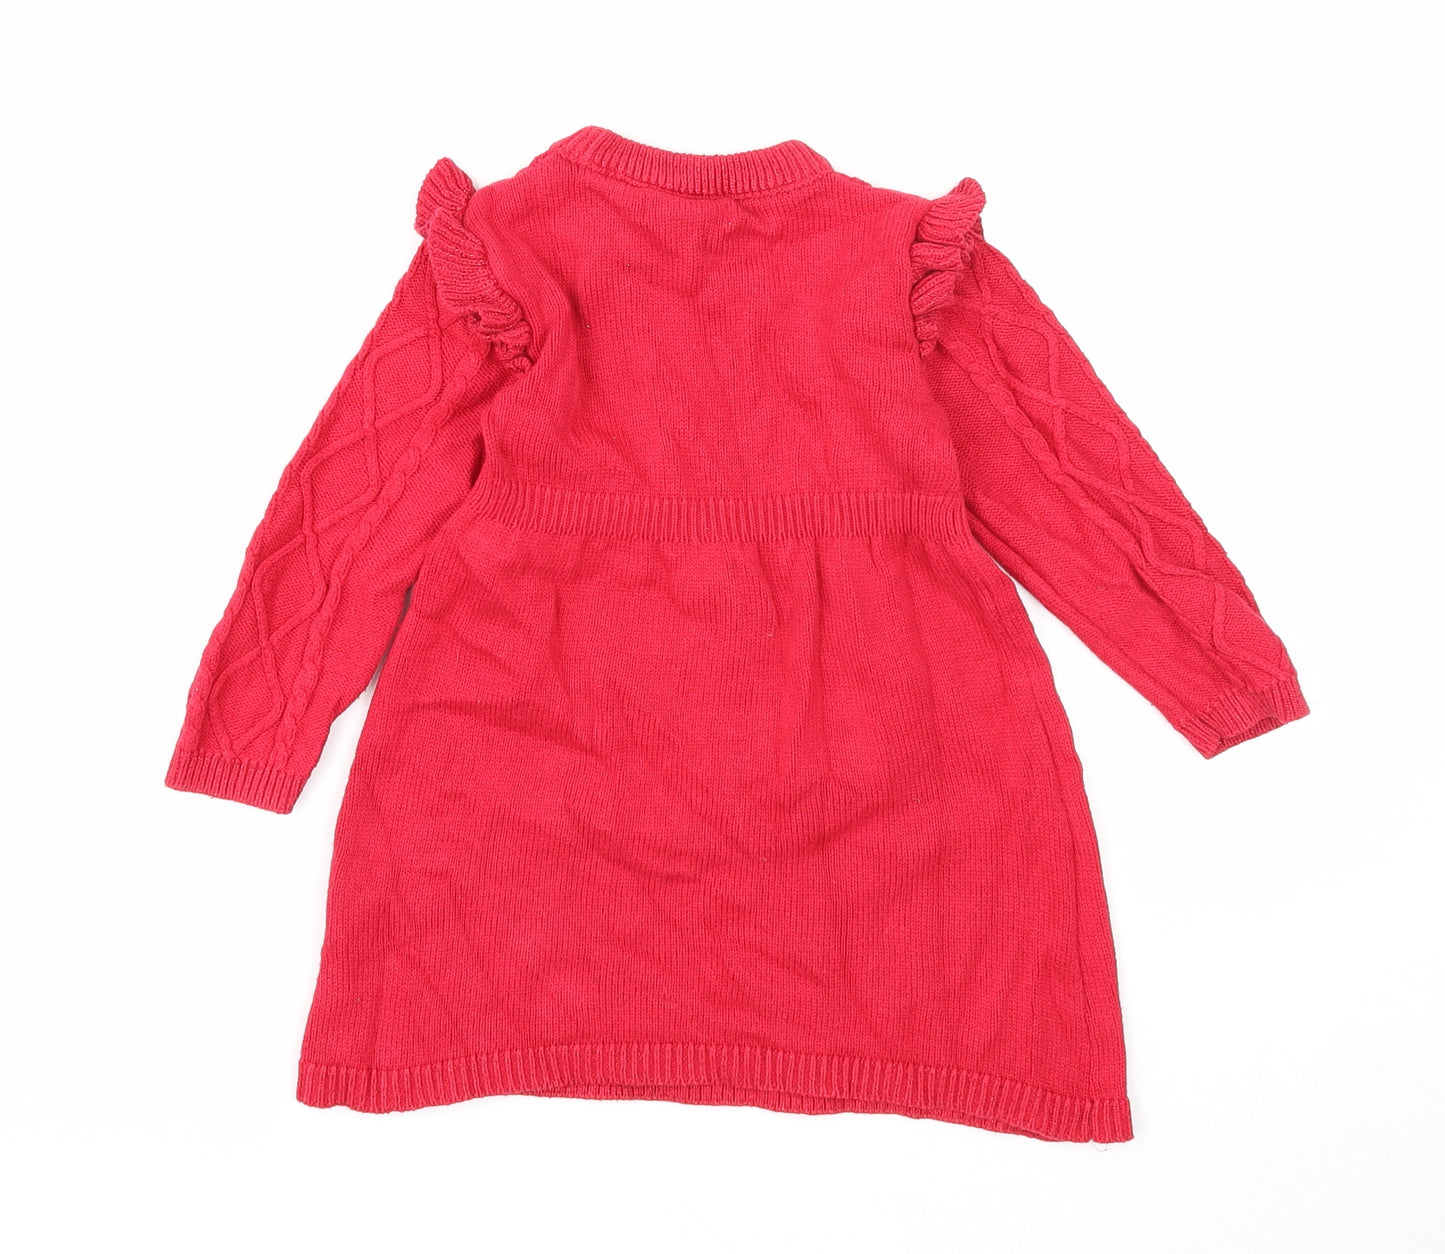 Primark Girls Red Cotton Jumper Dress Size 2-3 Years Round Neck Pullover